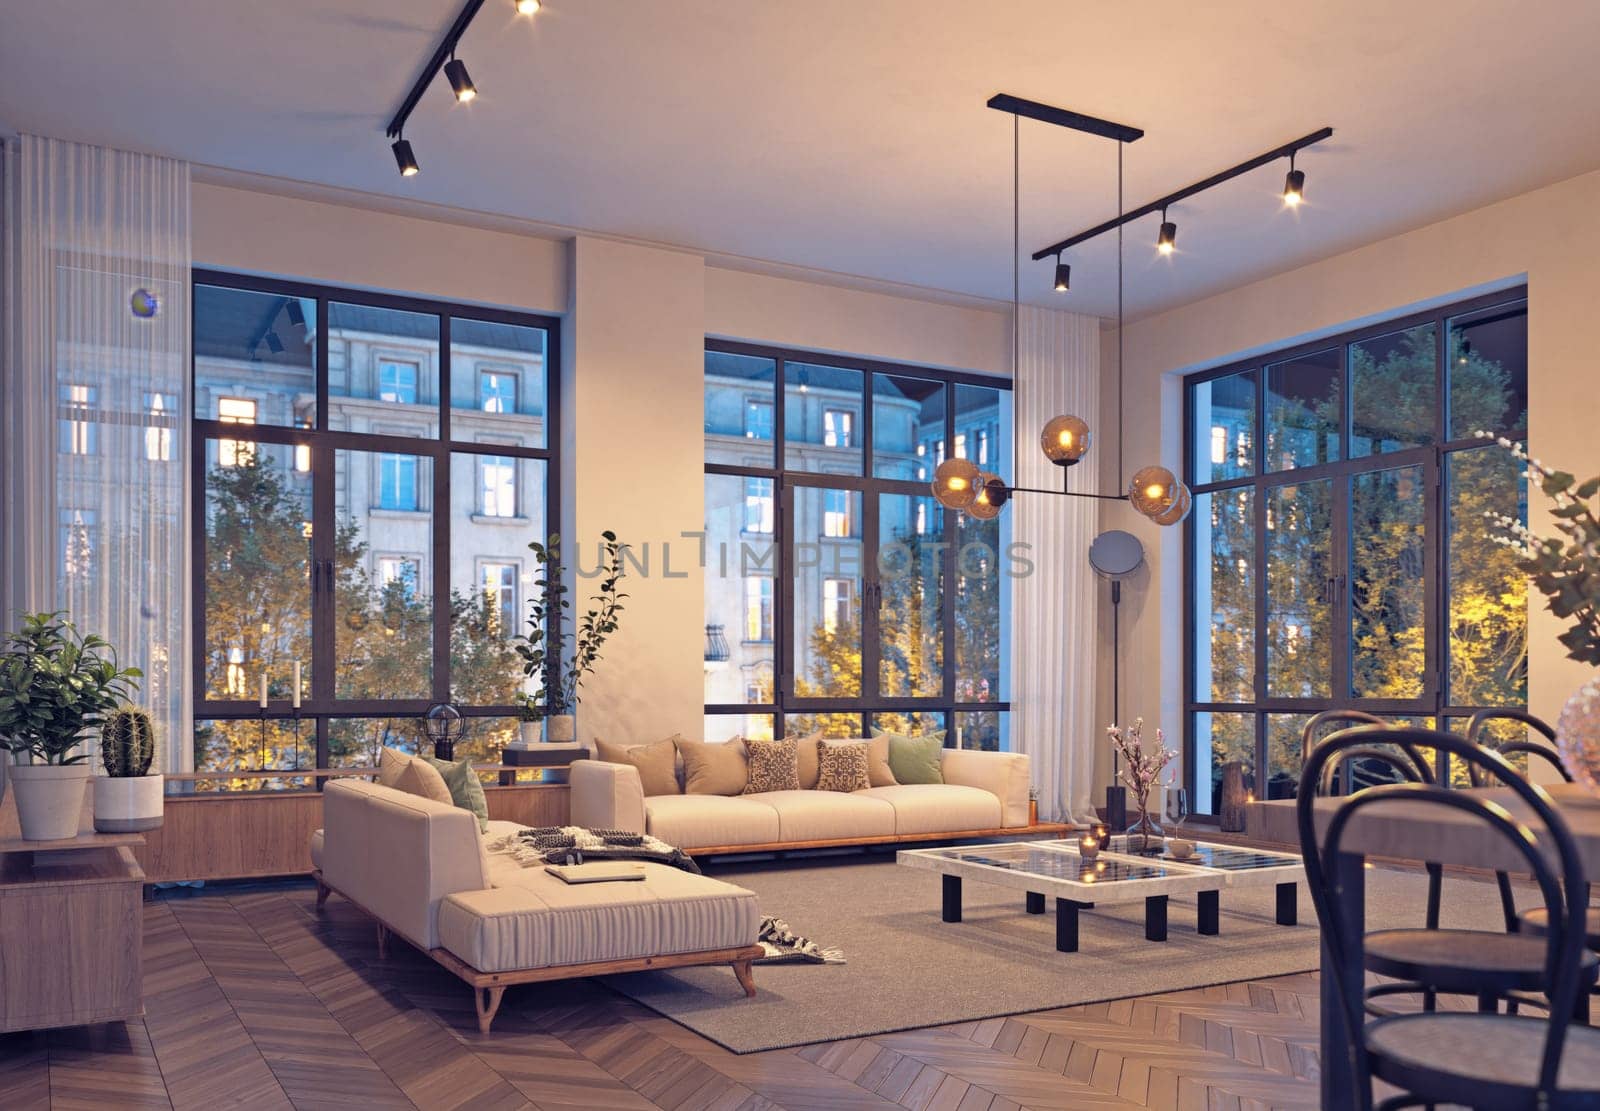 Modern living room interior design. 3D render concept. Living room.